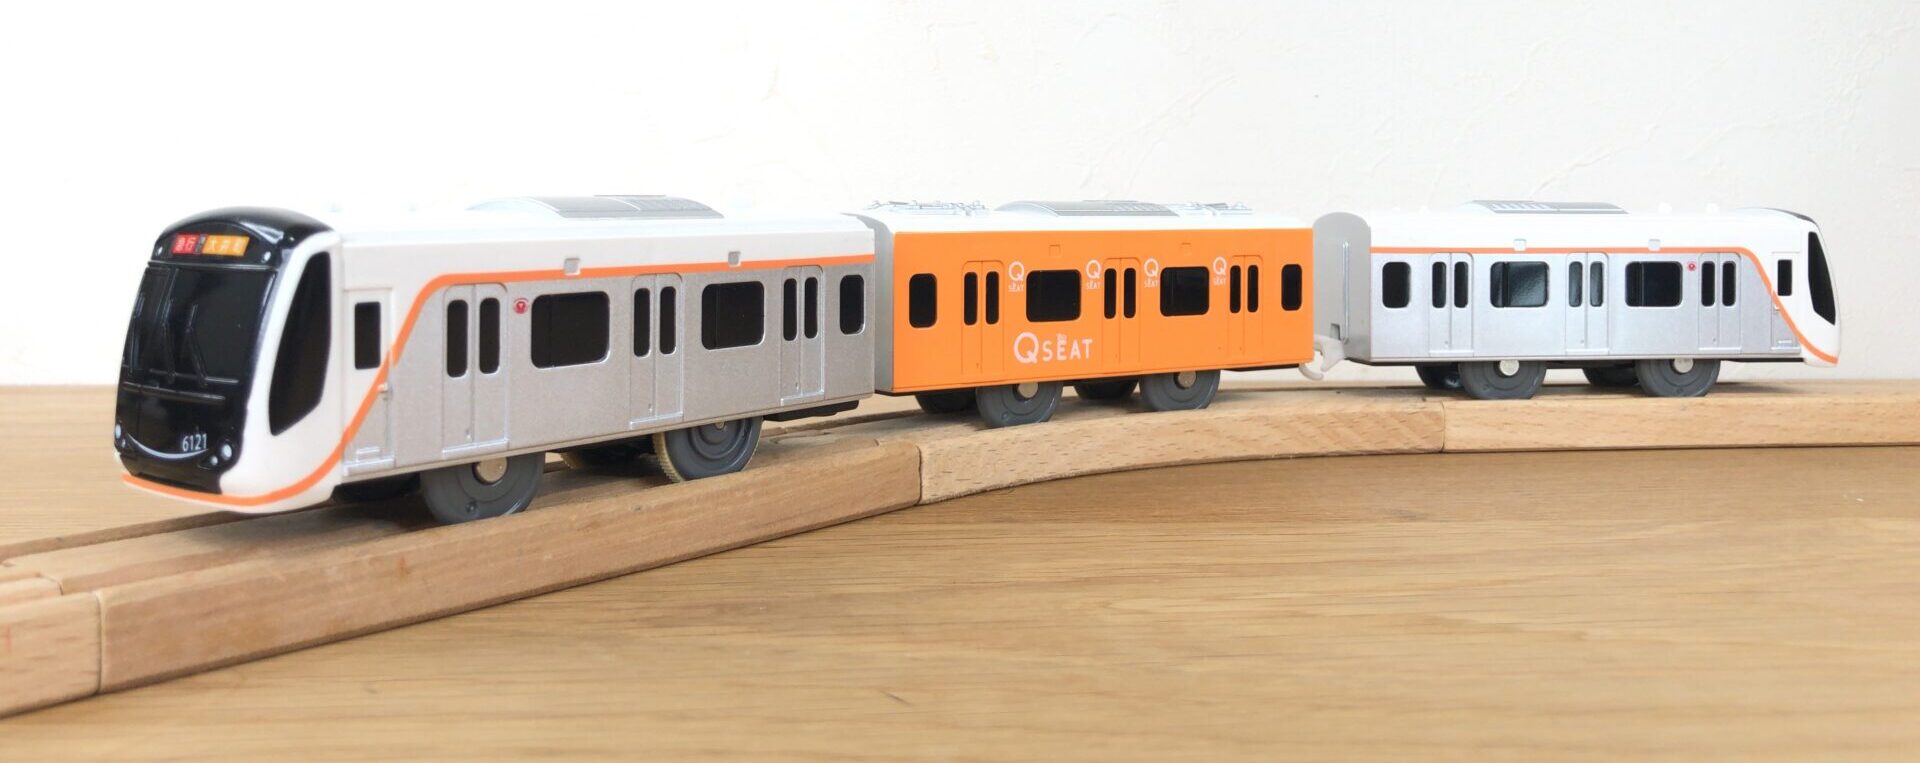 プラレール 東急電鉄6020系 Q SEAT - 鉄道模型